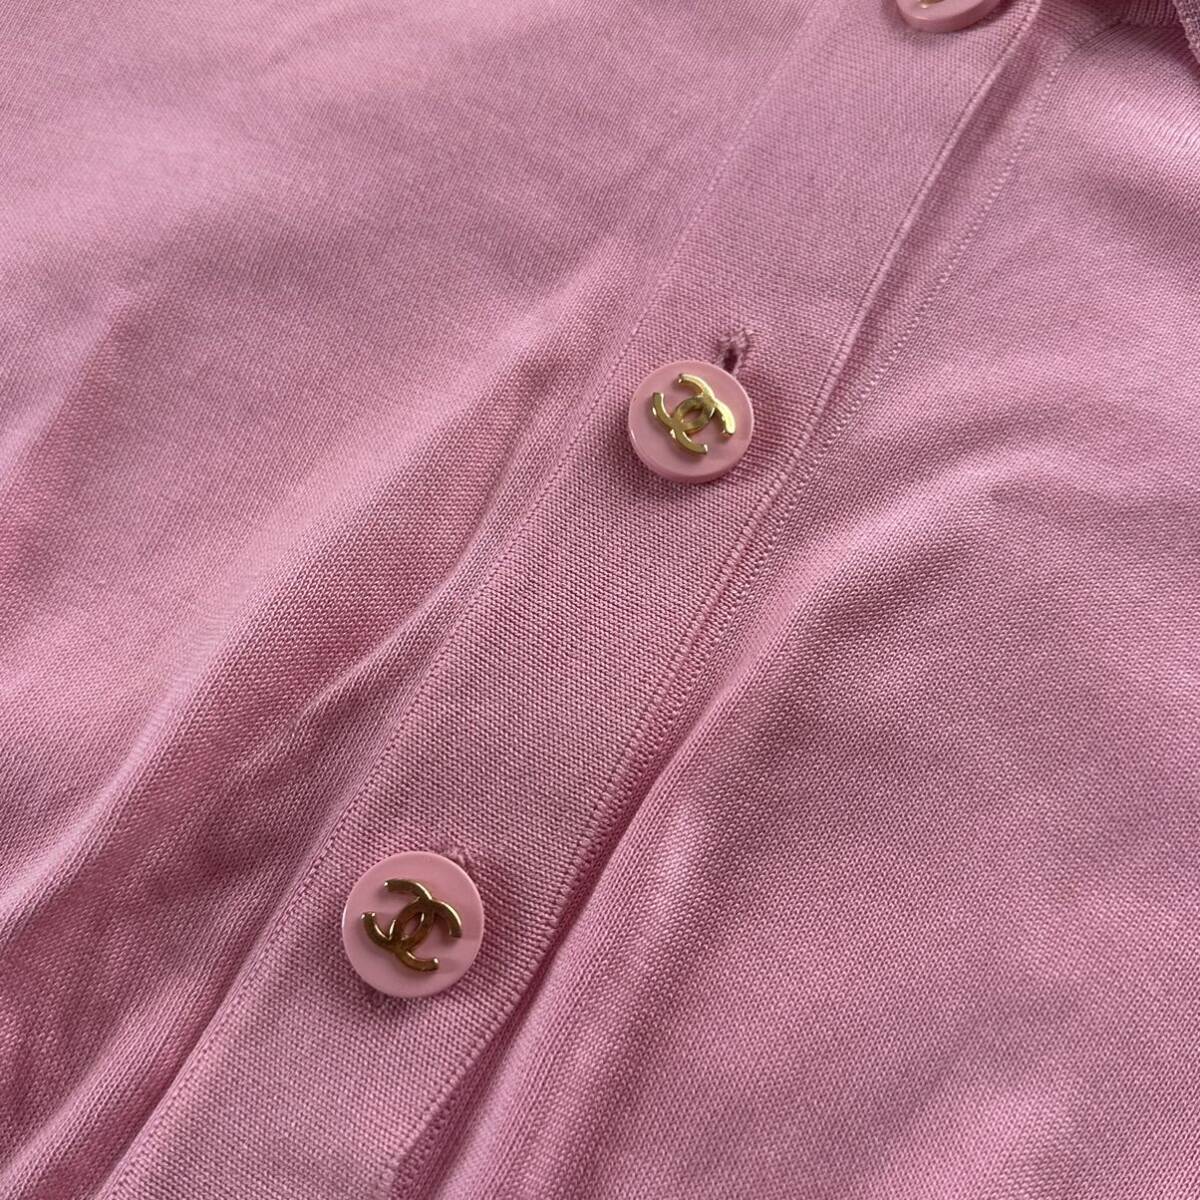 激レア 美品 シャネル CHANEL トップス カーディガン クロップド Tシャツ ヴィンテージ ココボタン ピンクの画像4